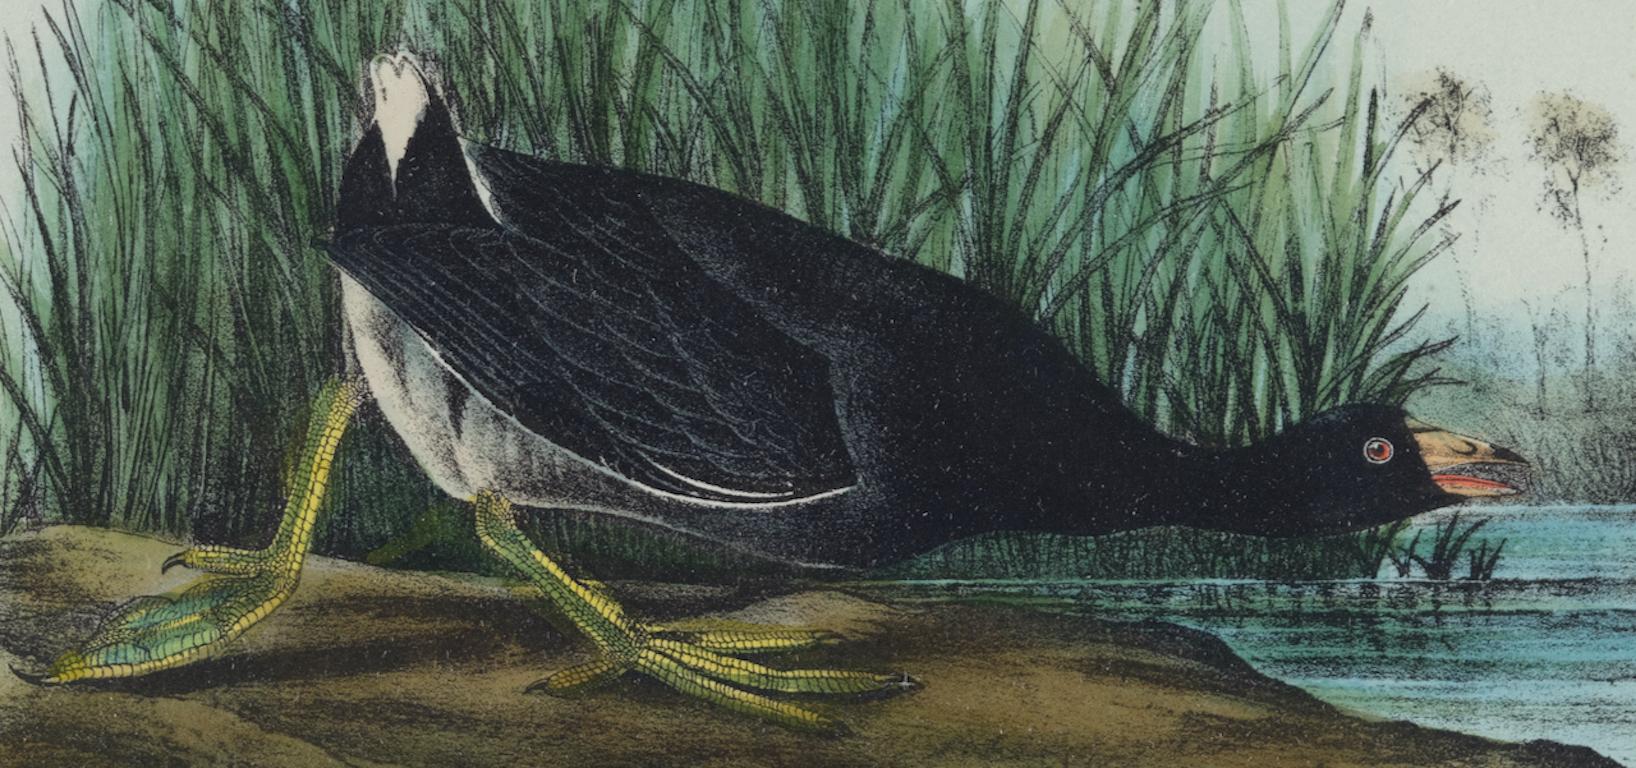 Il s'agit d'une lithographie originale du 19ème siècle de John James Audubon, coloriée à la main, intitulée 